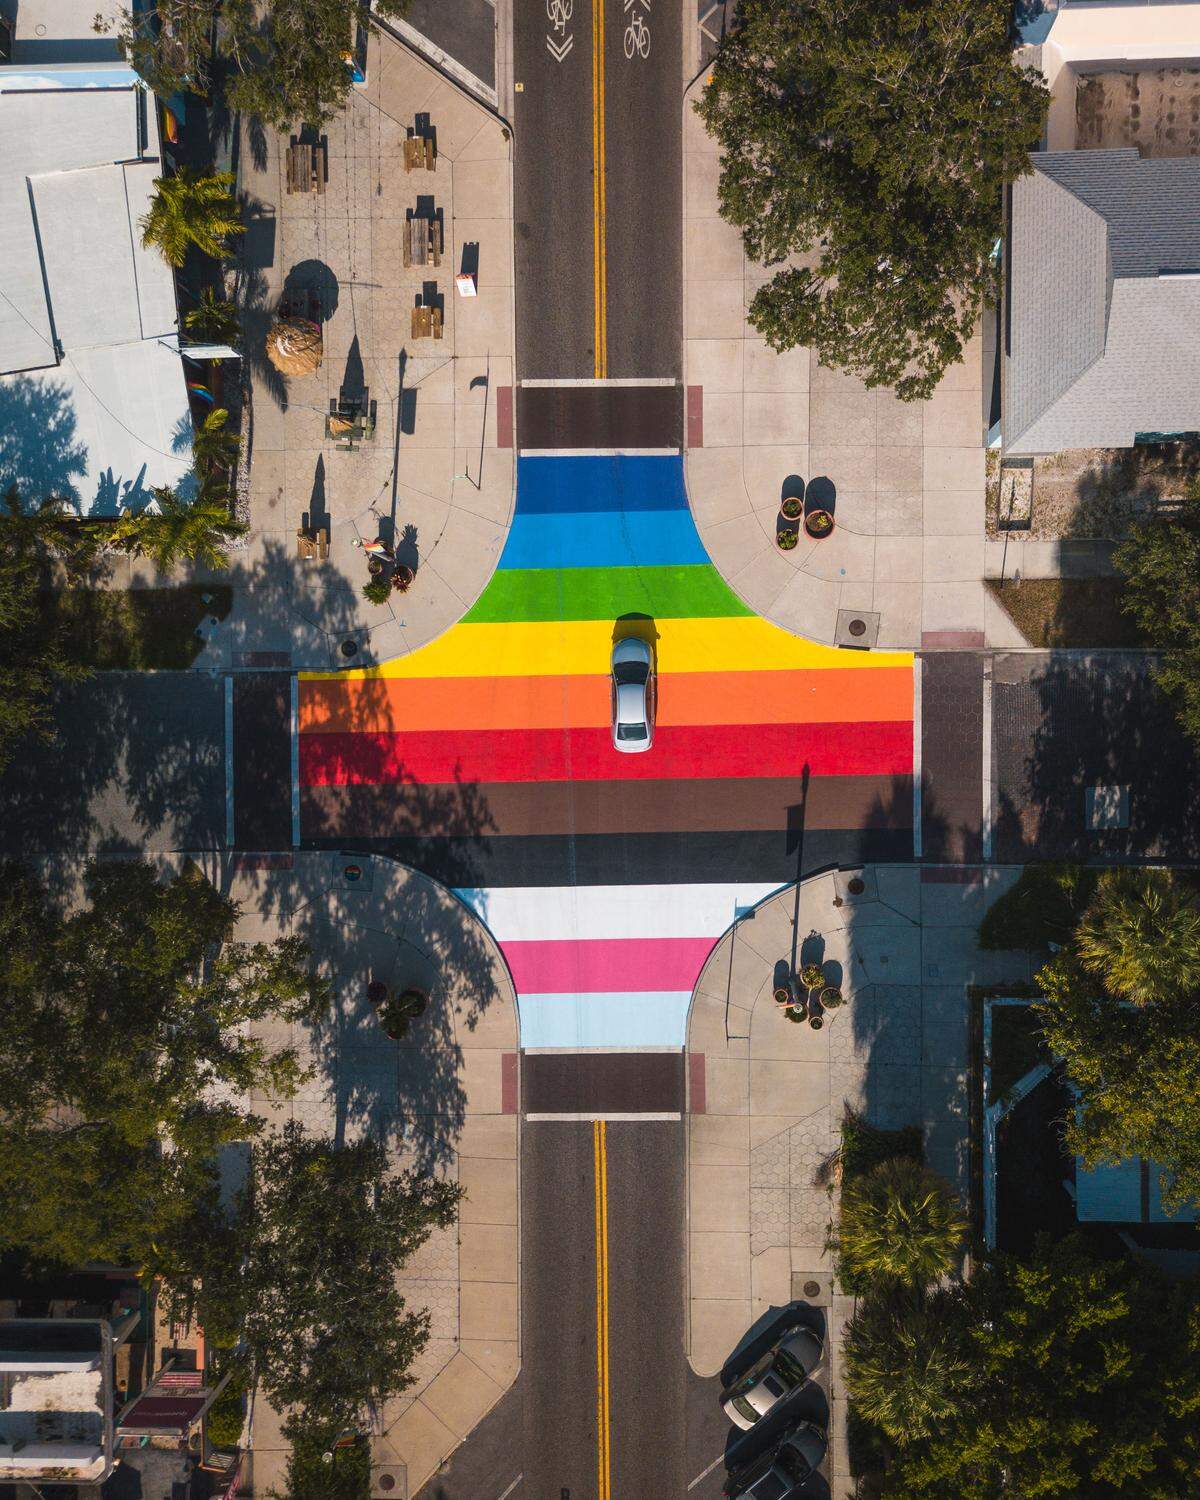 Seit Ende Juli 2020 gibt es einen weiteren Neuzugang in St. Pete/Clearwaters Mural-Szene. An der Central Avenue entstand ein großes LGBTQ Pride Mural, welches in Regenbogenfarben eine komplette Kreuzung abdeckt. Da der jährliche St. Pete Pride dieses Jahr aufgrund der COVID-19 abgesagt werden musste, wird mit dem neuen Mural seitens der Stadt und Gemeinschaft ein Zeichen für Solidarität und Zusammenhalt gesetzt. Erstellt wurde das Mural von Cecilia Lueza.